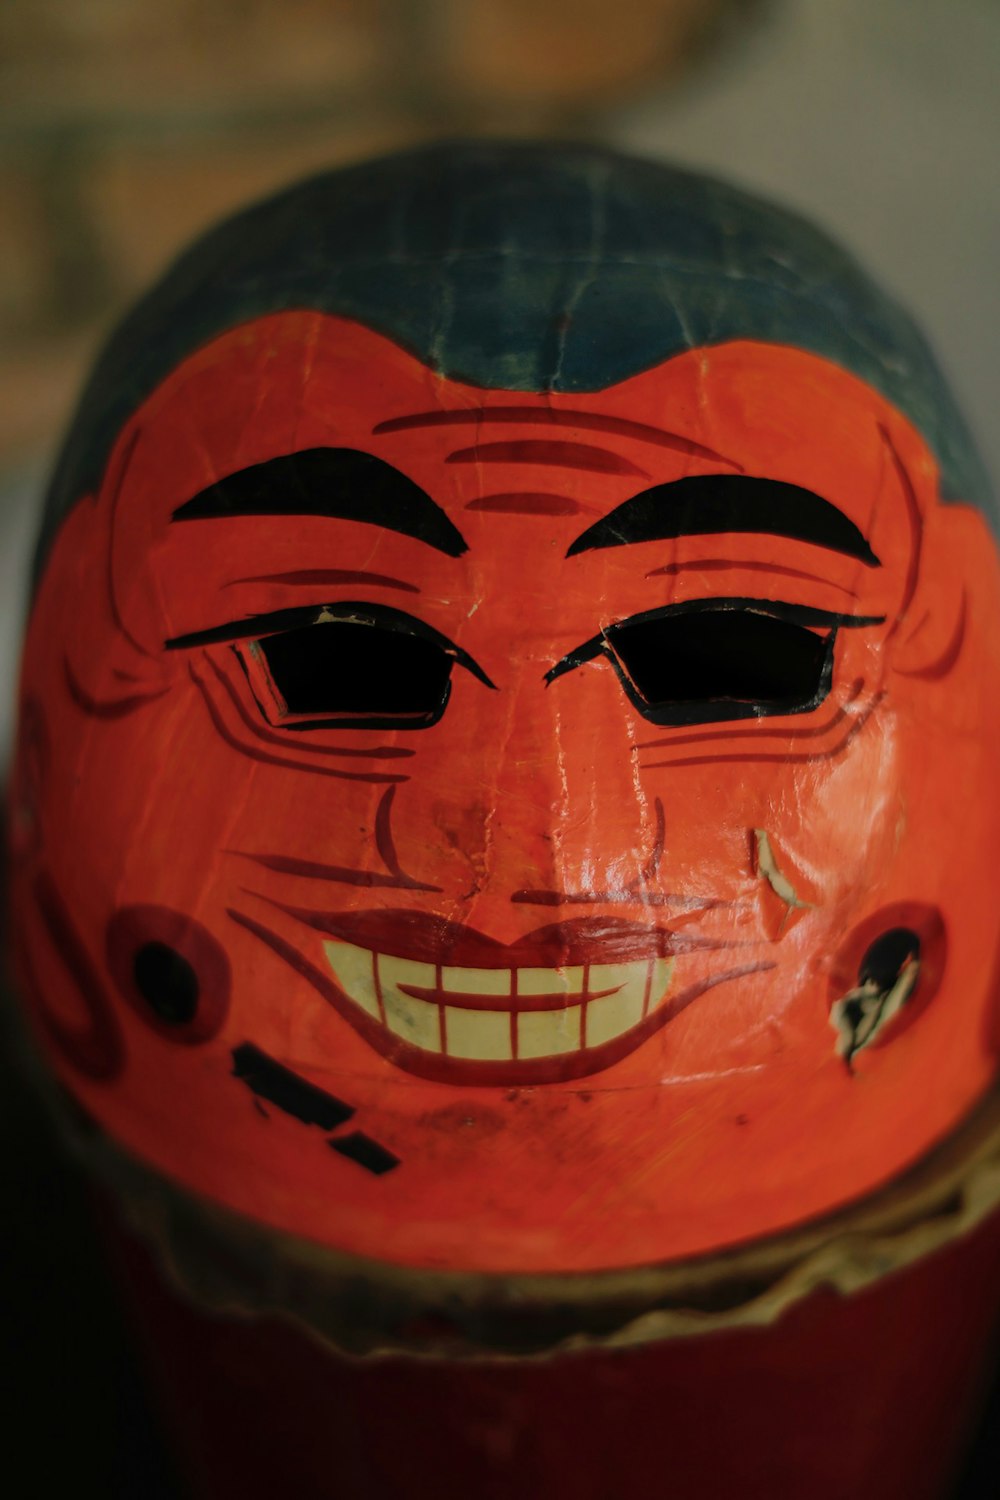 Rote und schwarze Maske in Nahaufnahmen